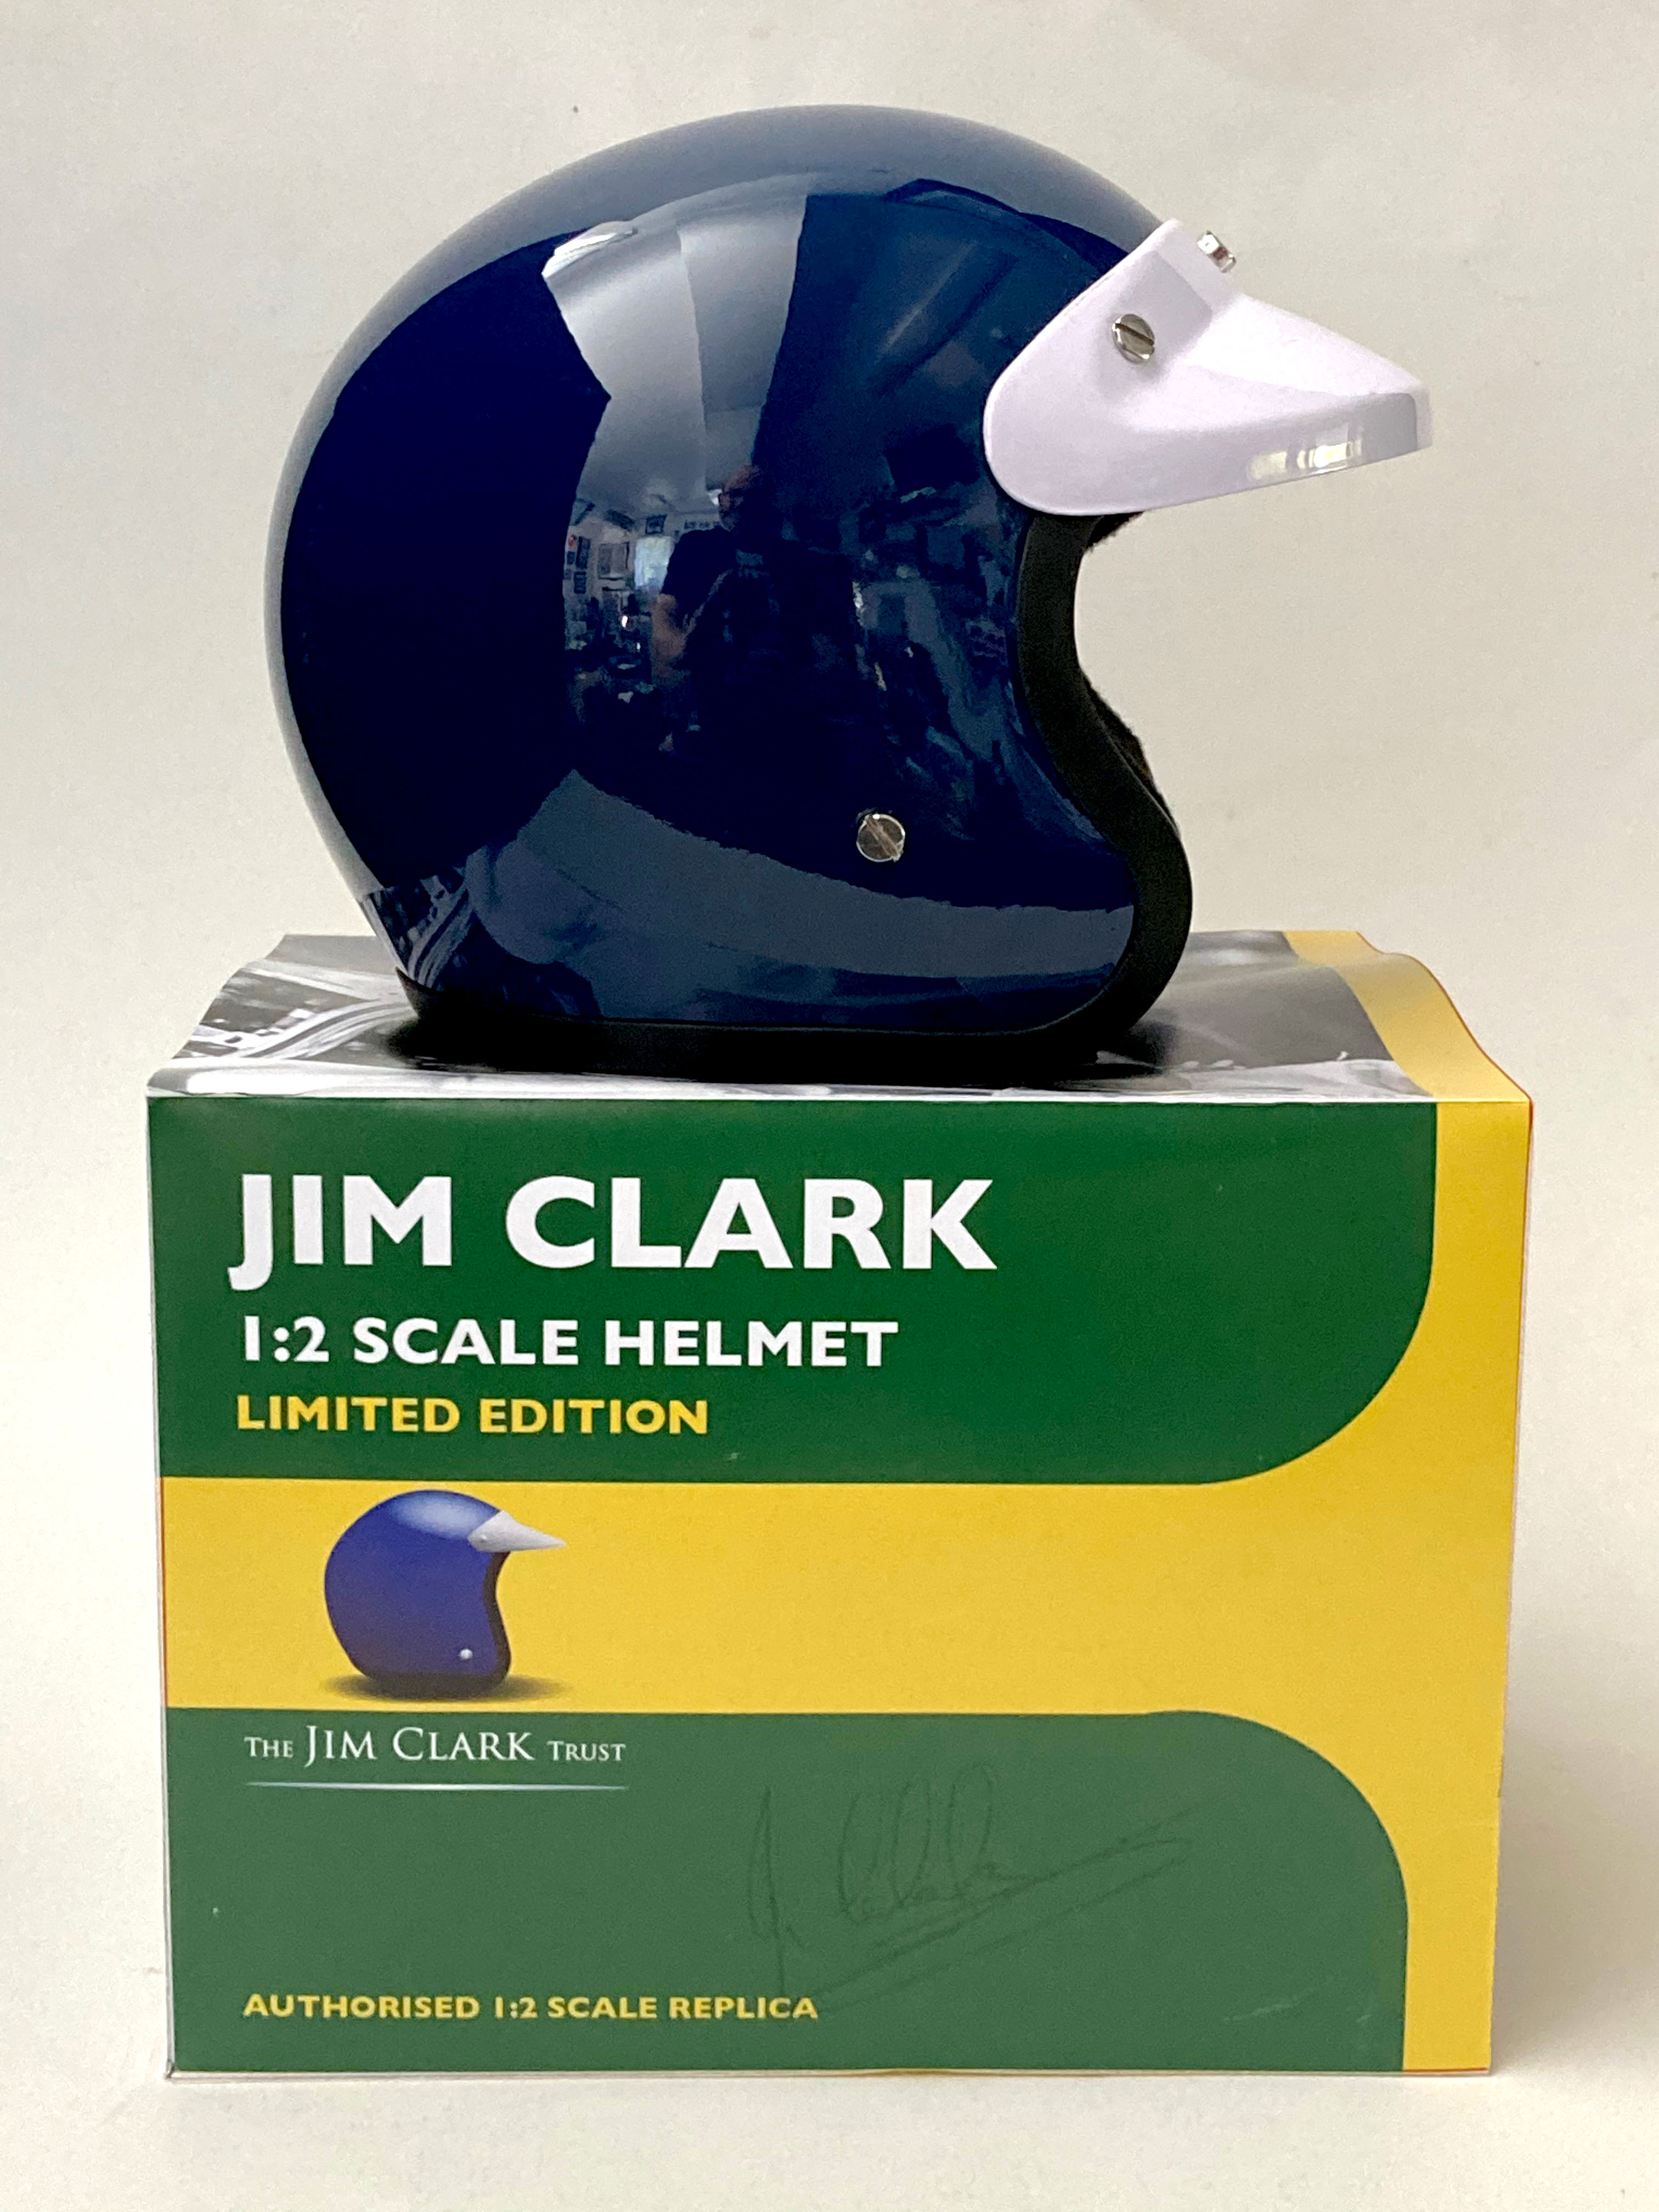 Jim Clark replica helmets